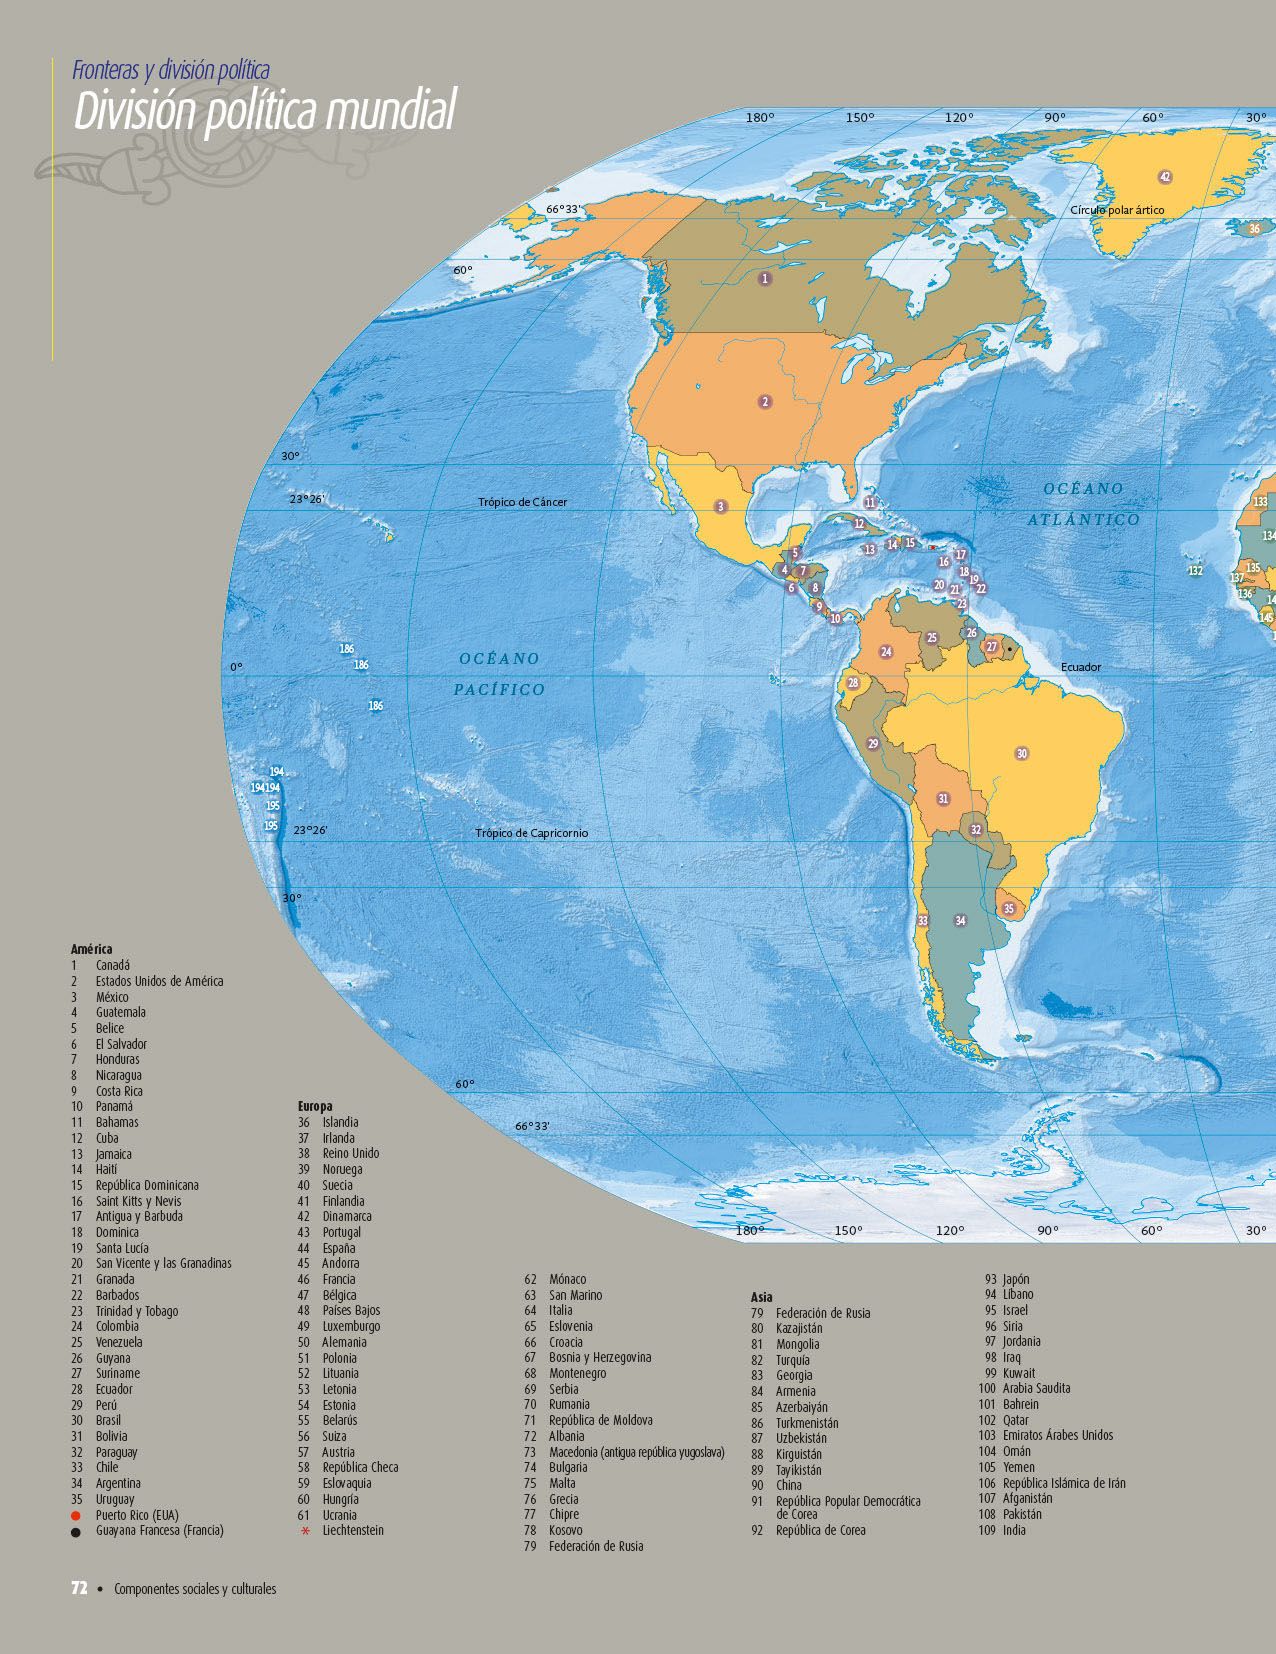 Atlas del Mundo Quinto grado 2020-2021 - Página 72 de 121 - Libros de Texto Online